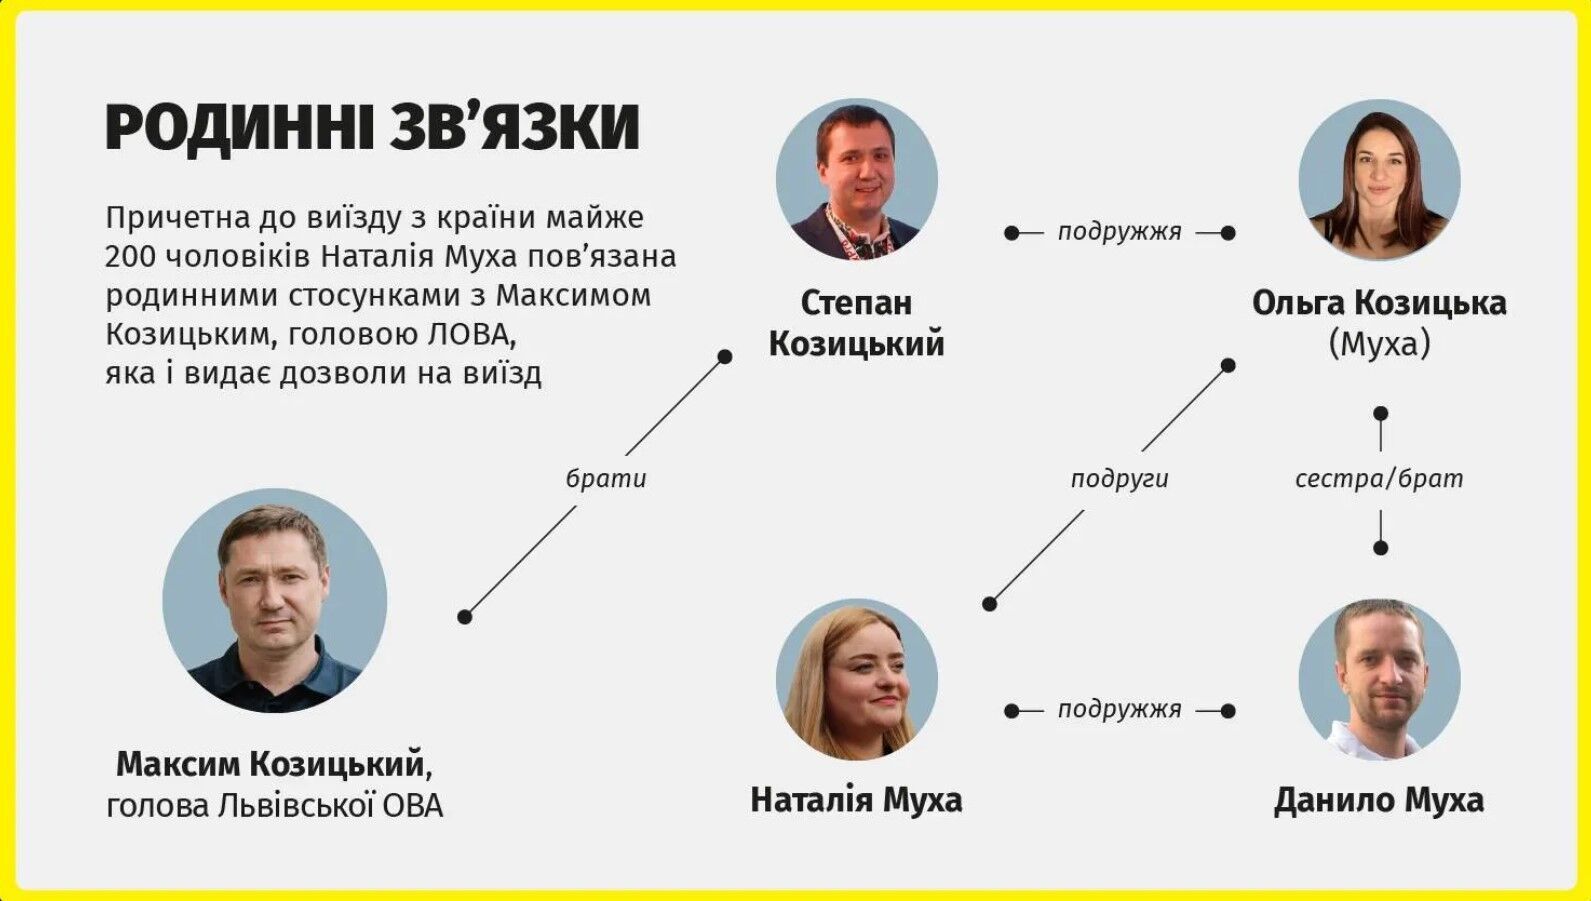 Родственница председателя Львовской ОВА причастна к бегству за границу почти 200 мужчин призывного возраста - СМИ